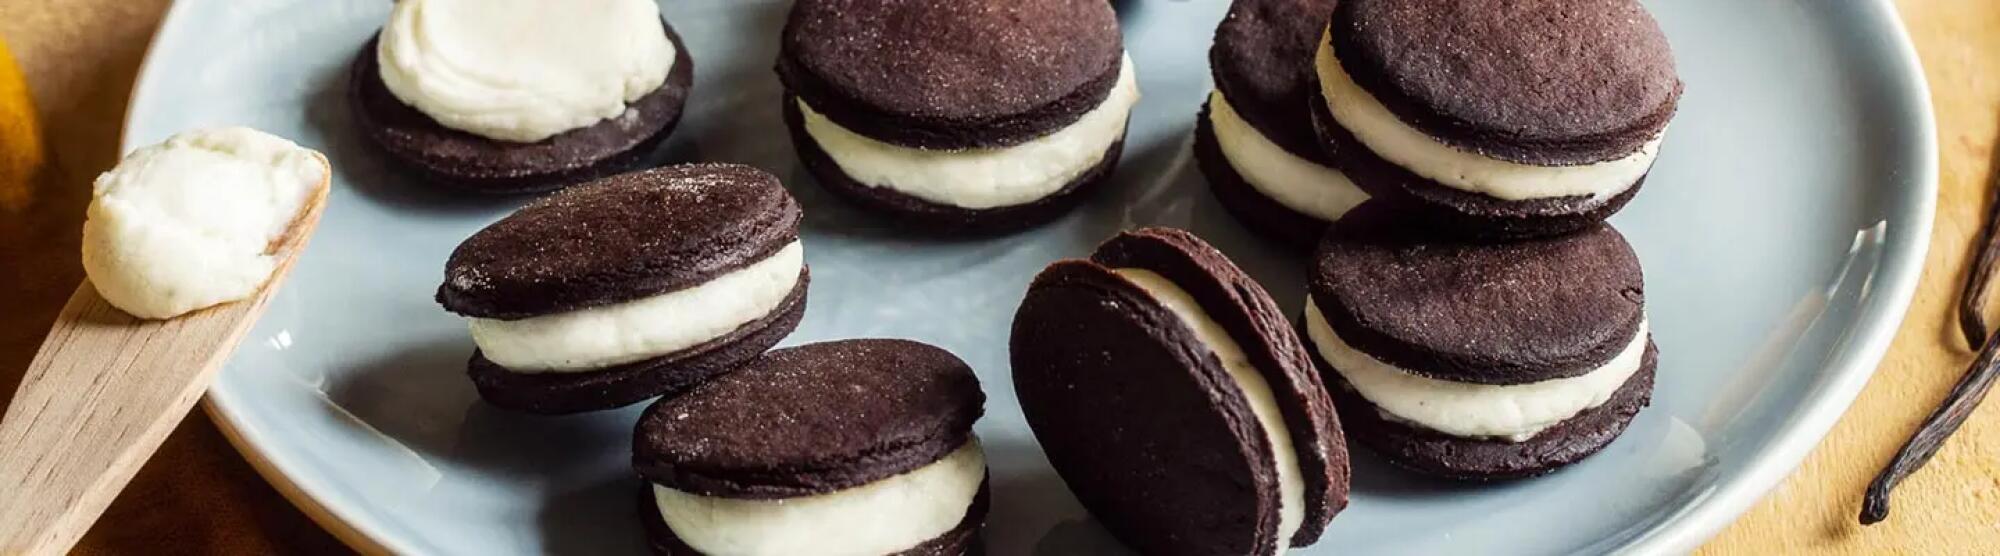 Recette : Biscuits au chocolat fourrés à la crème vanille au fromage frais